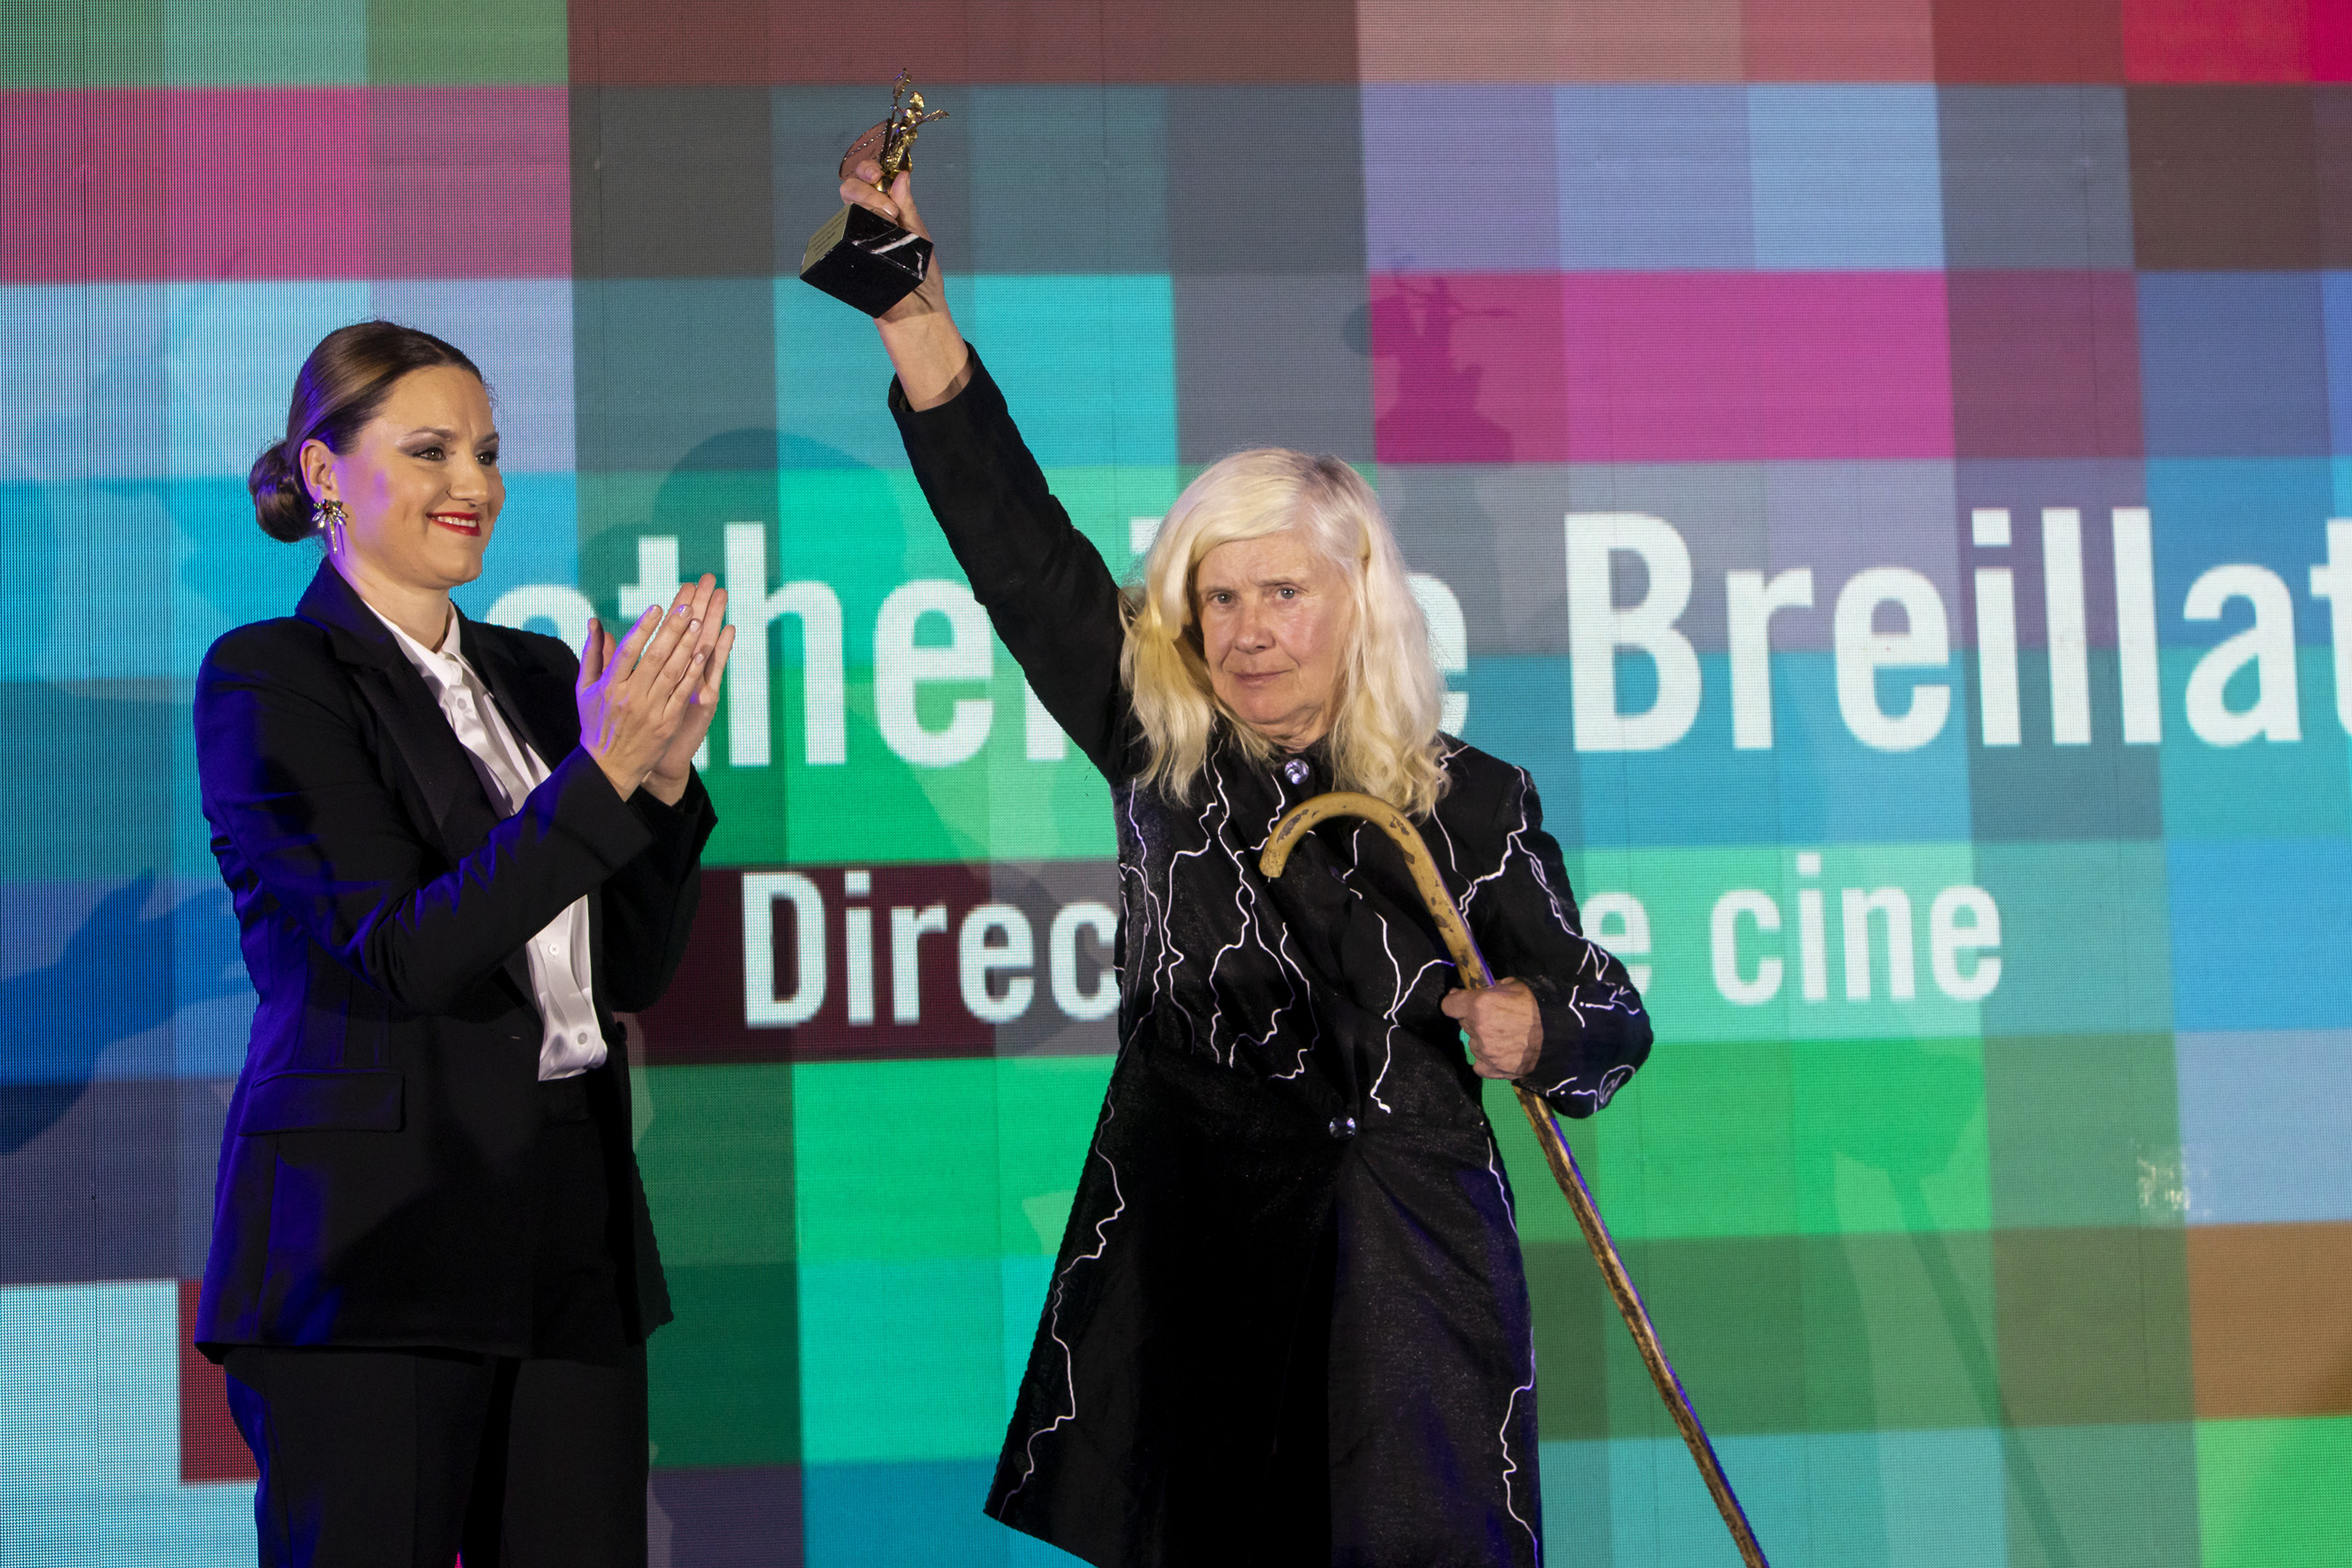 La delegada de Cultura reconoció el papel de Catherine Breillat al abrir el camino a otras mujeres directoras.